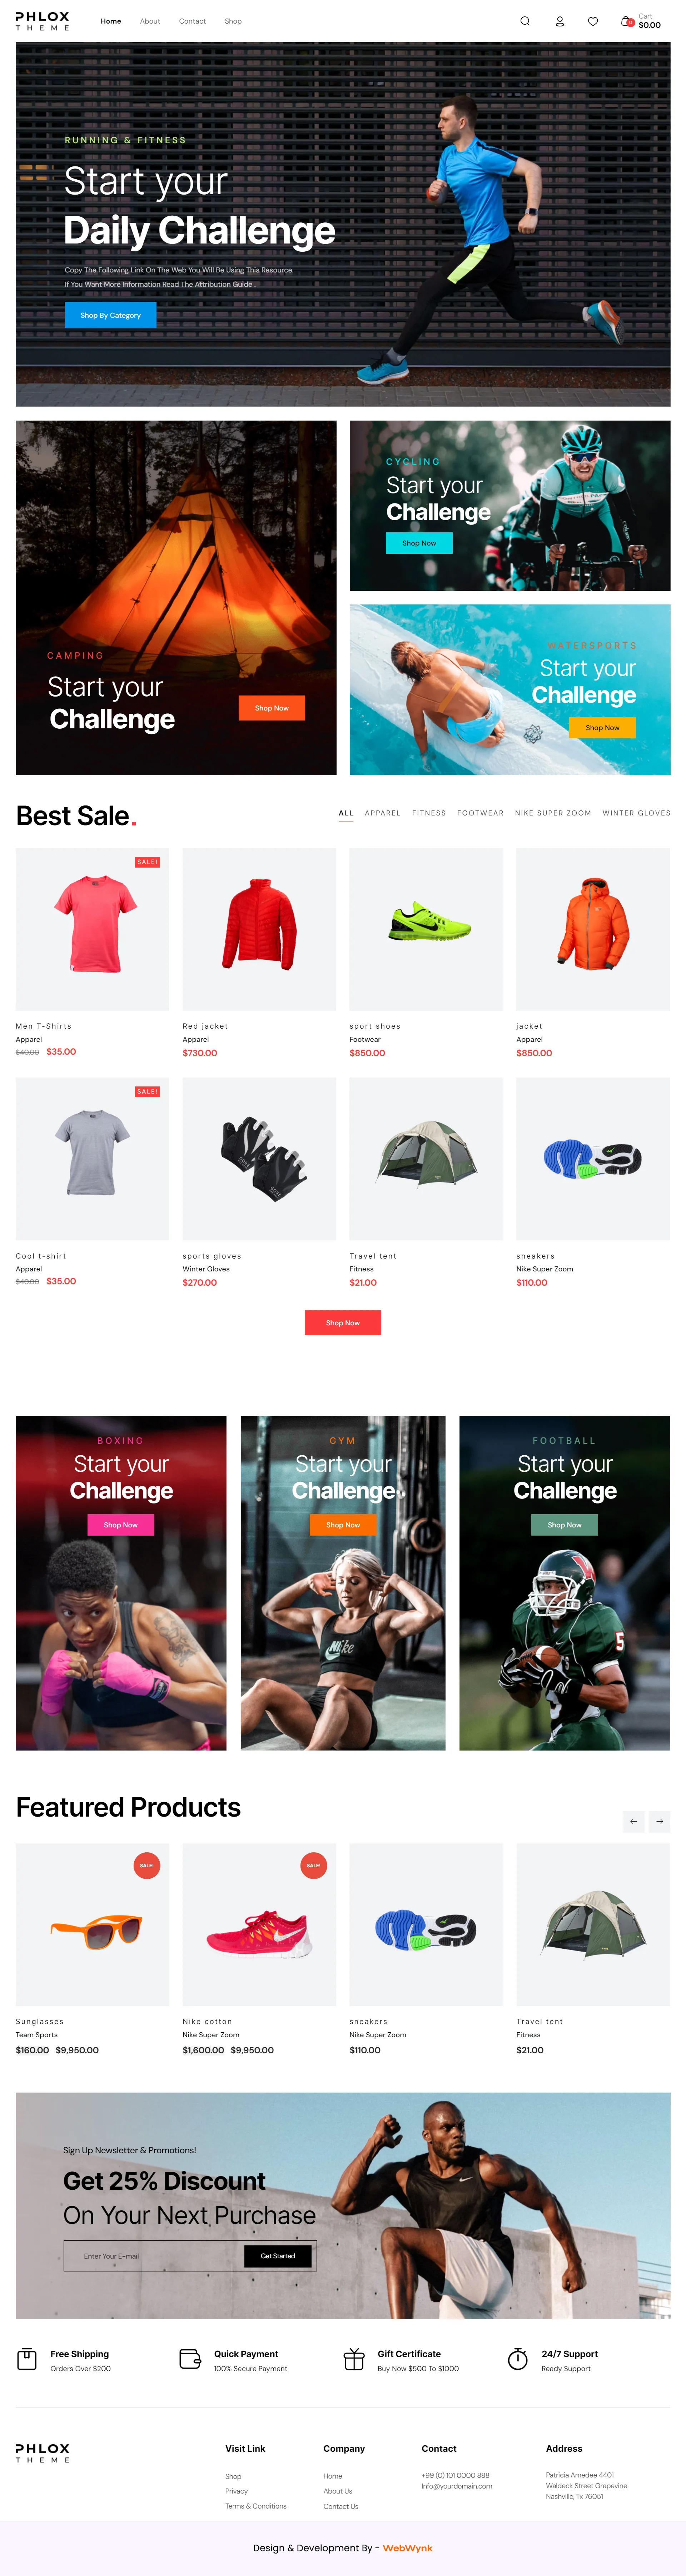 sports-wear-ecommerce-website-design-webwynk